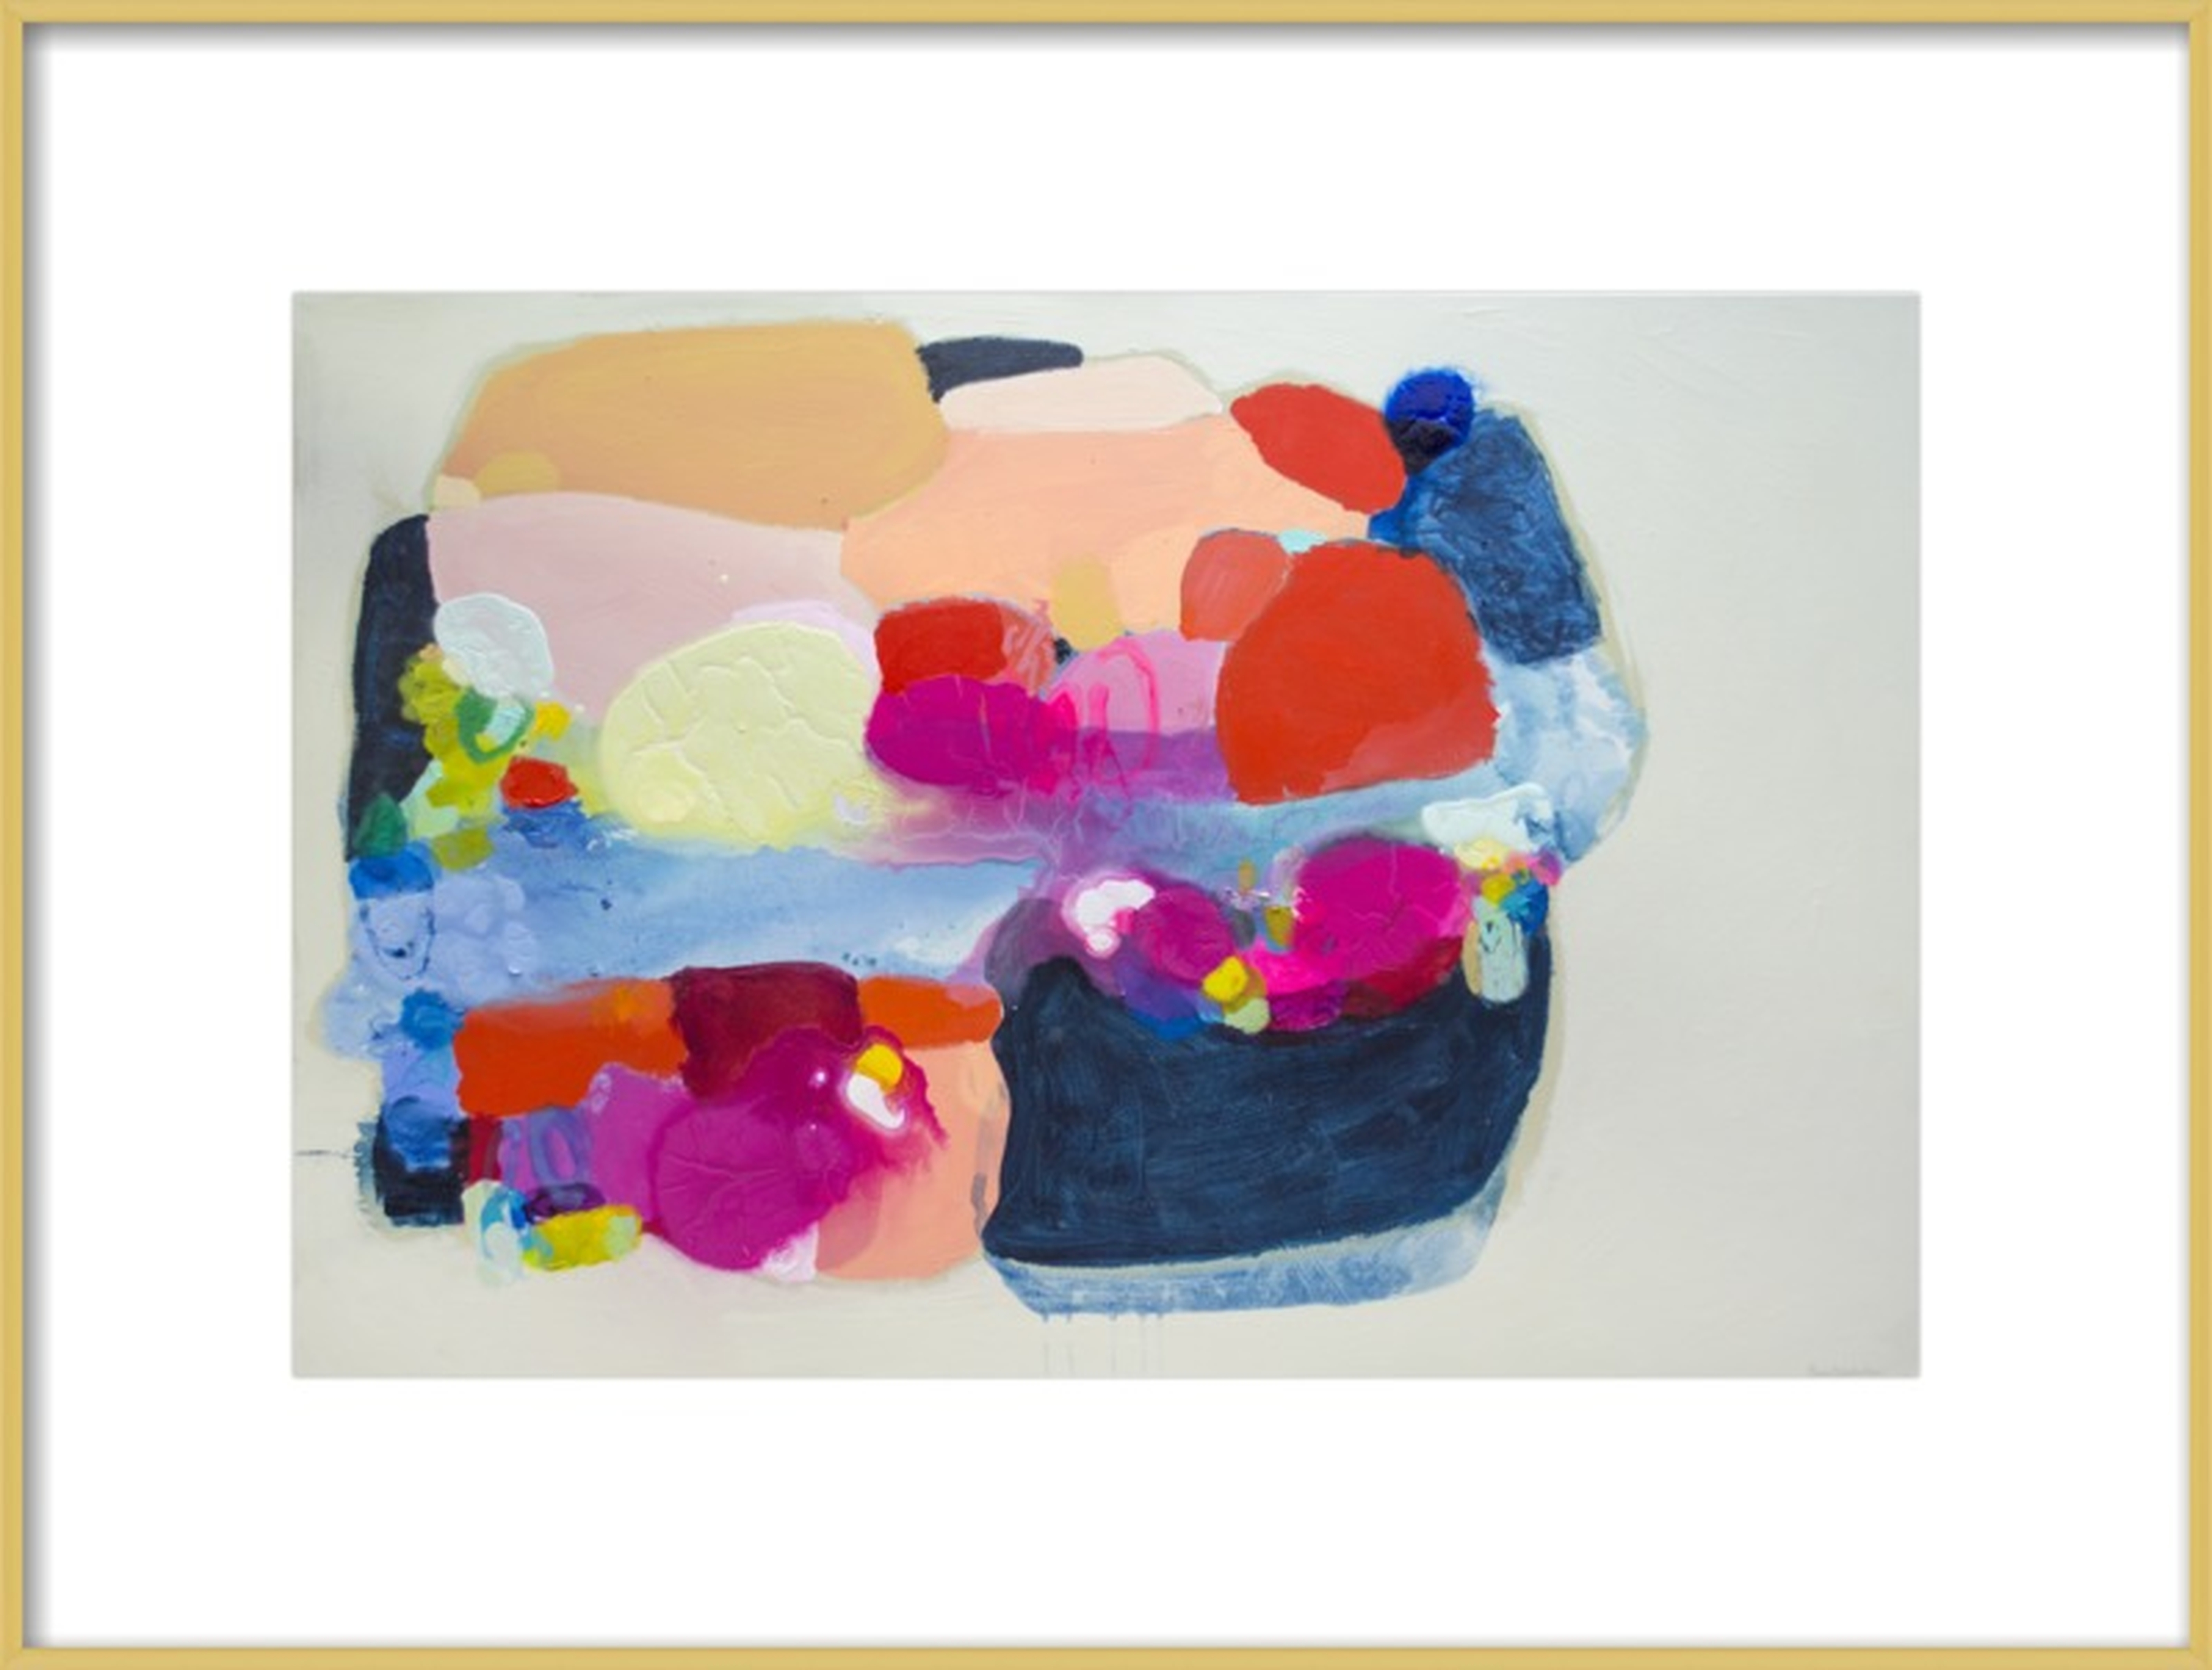 Juicy Burger by Claire Desjardins for Artfully Walls - Artfully Walls